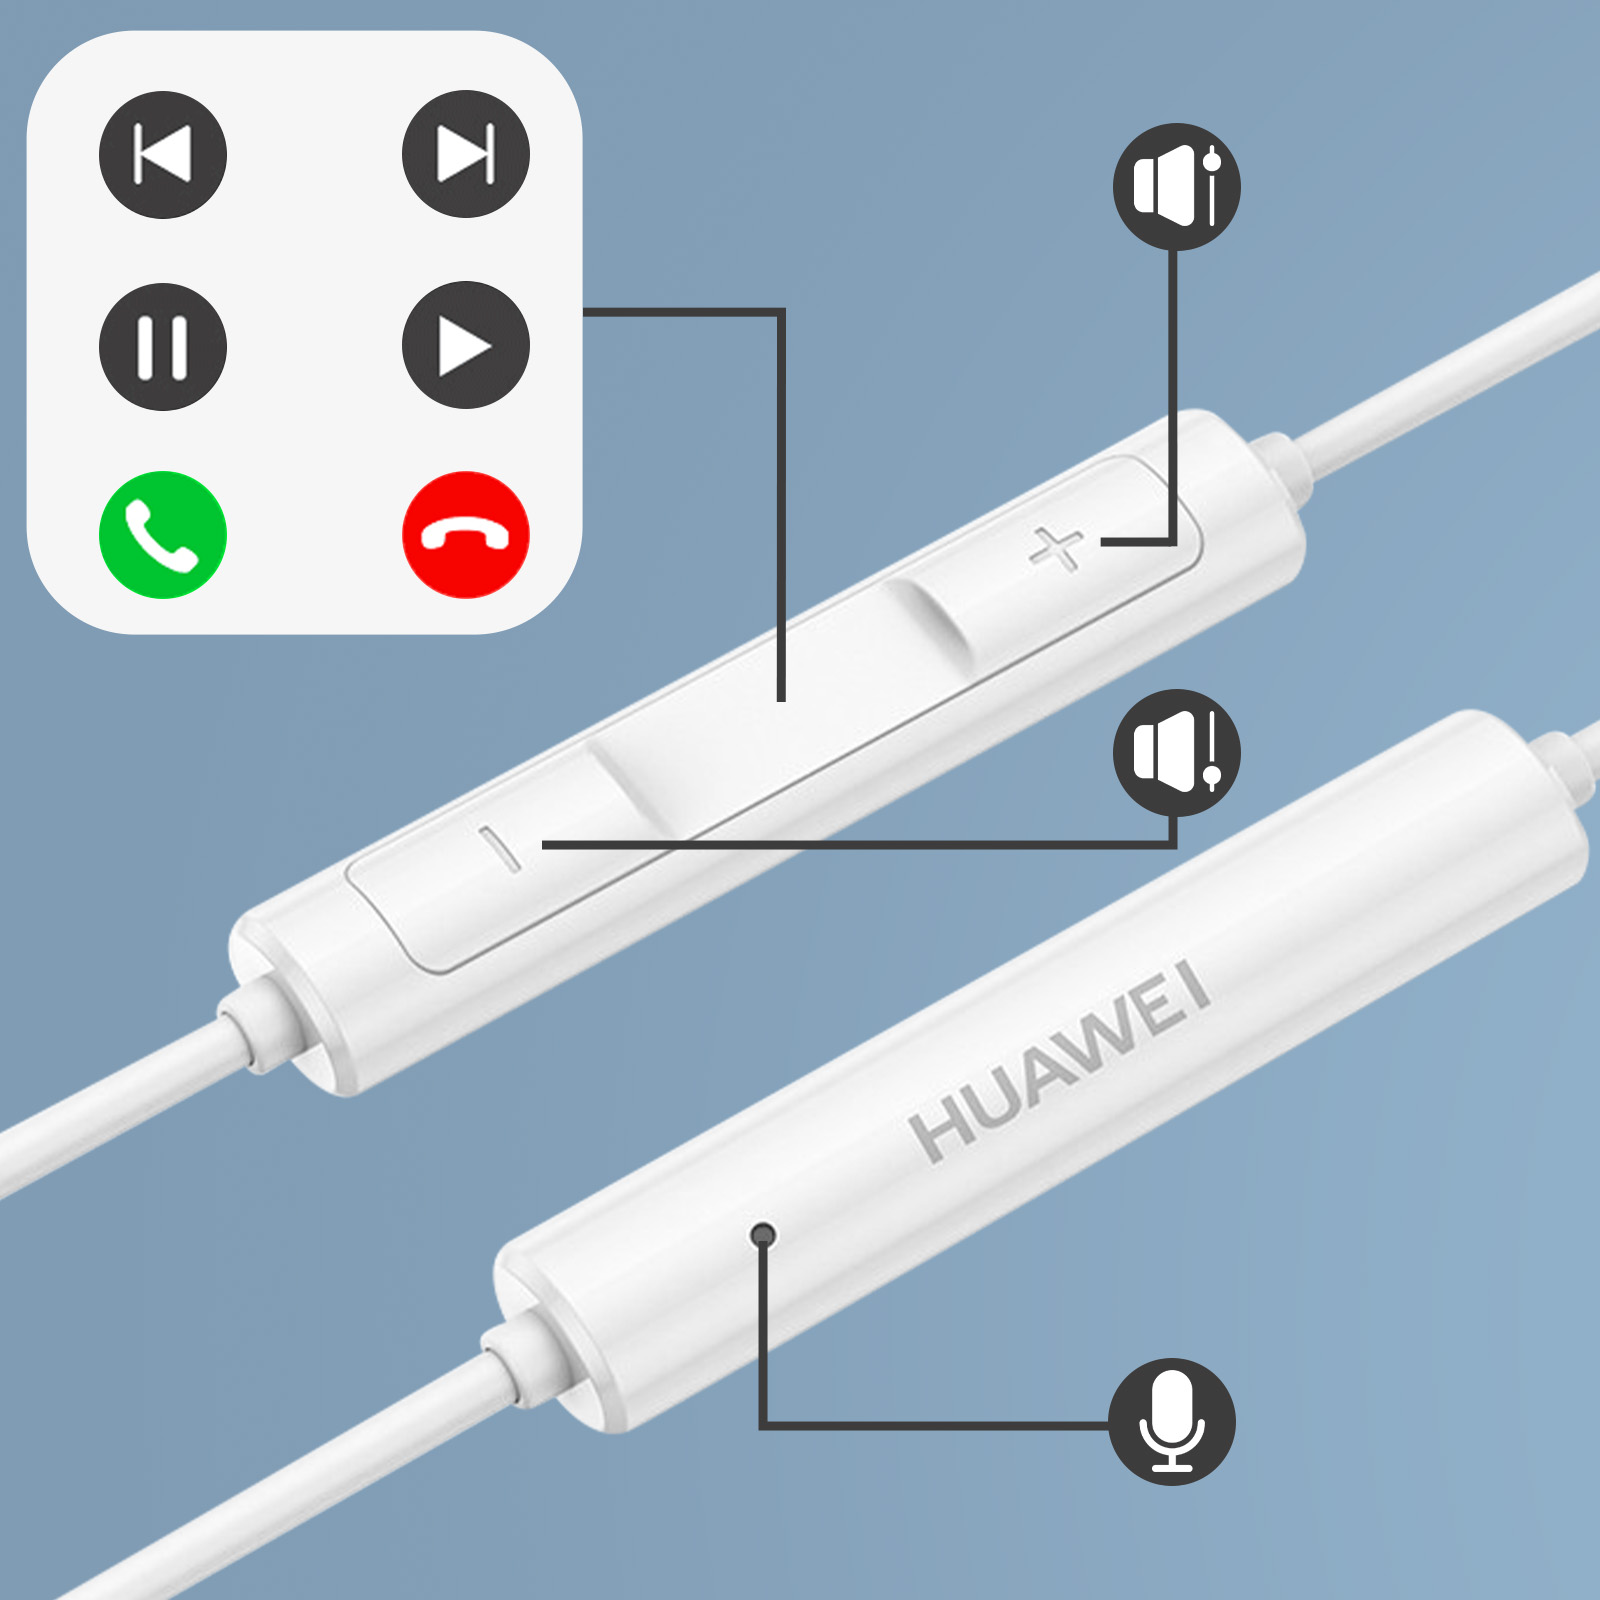 Écouteurs USB-C d'origine Huawei petit prix